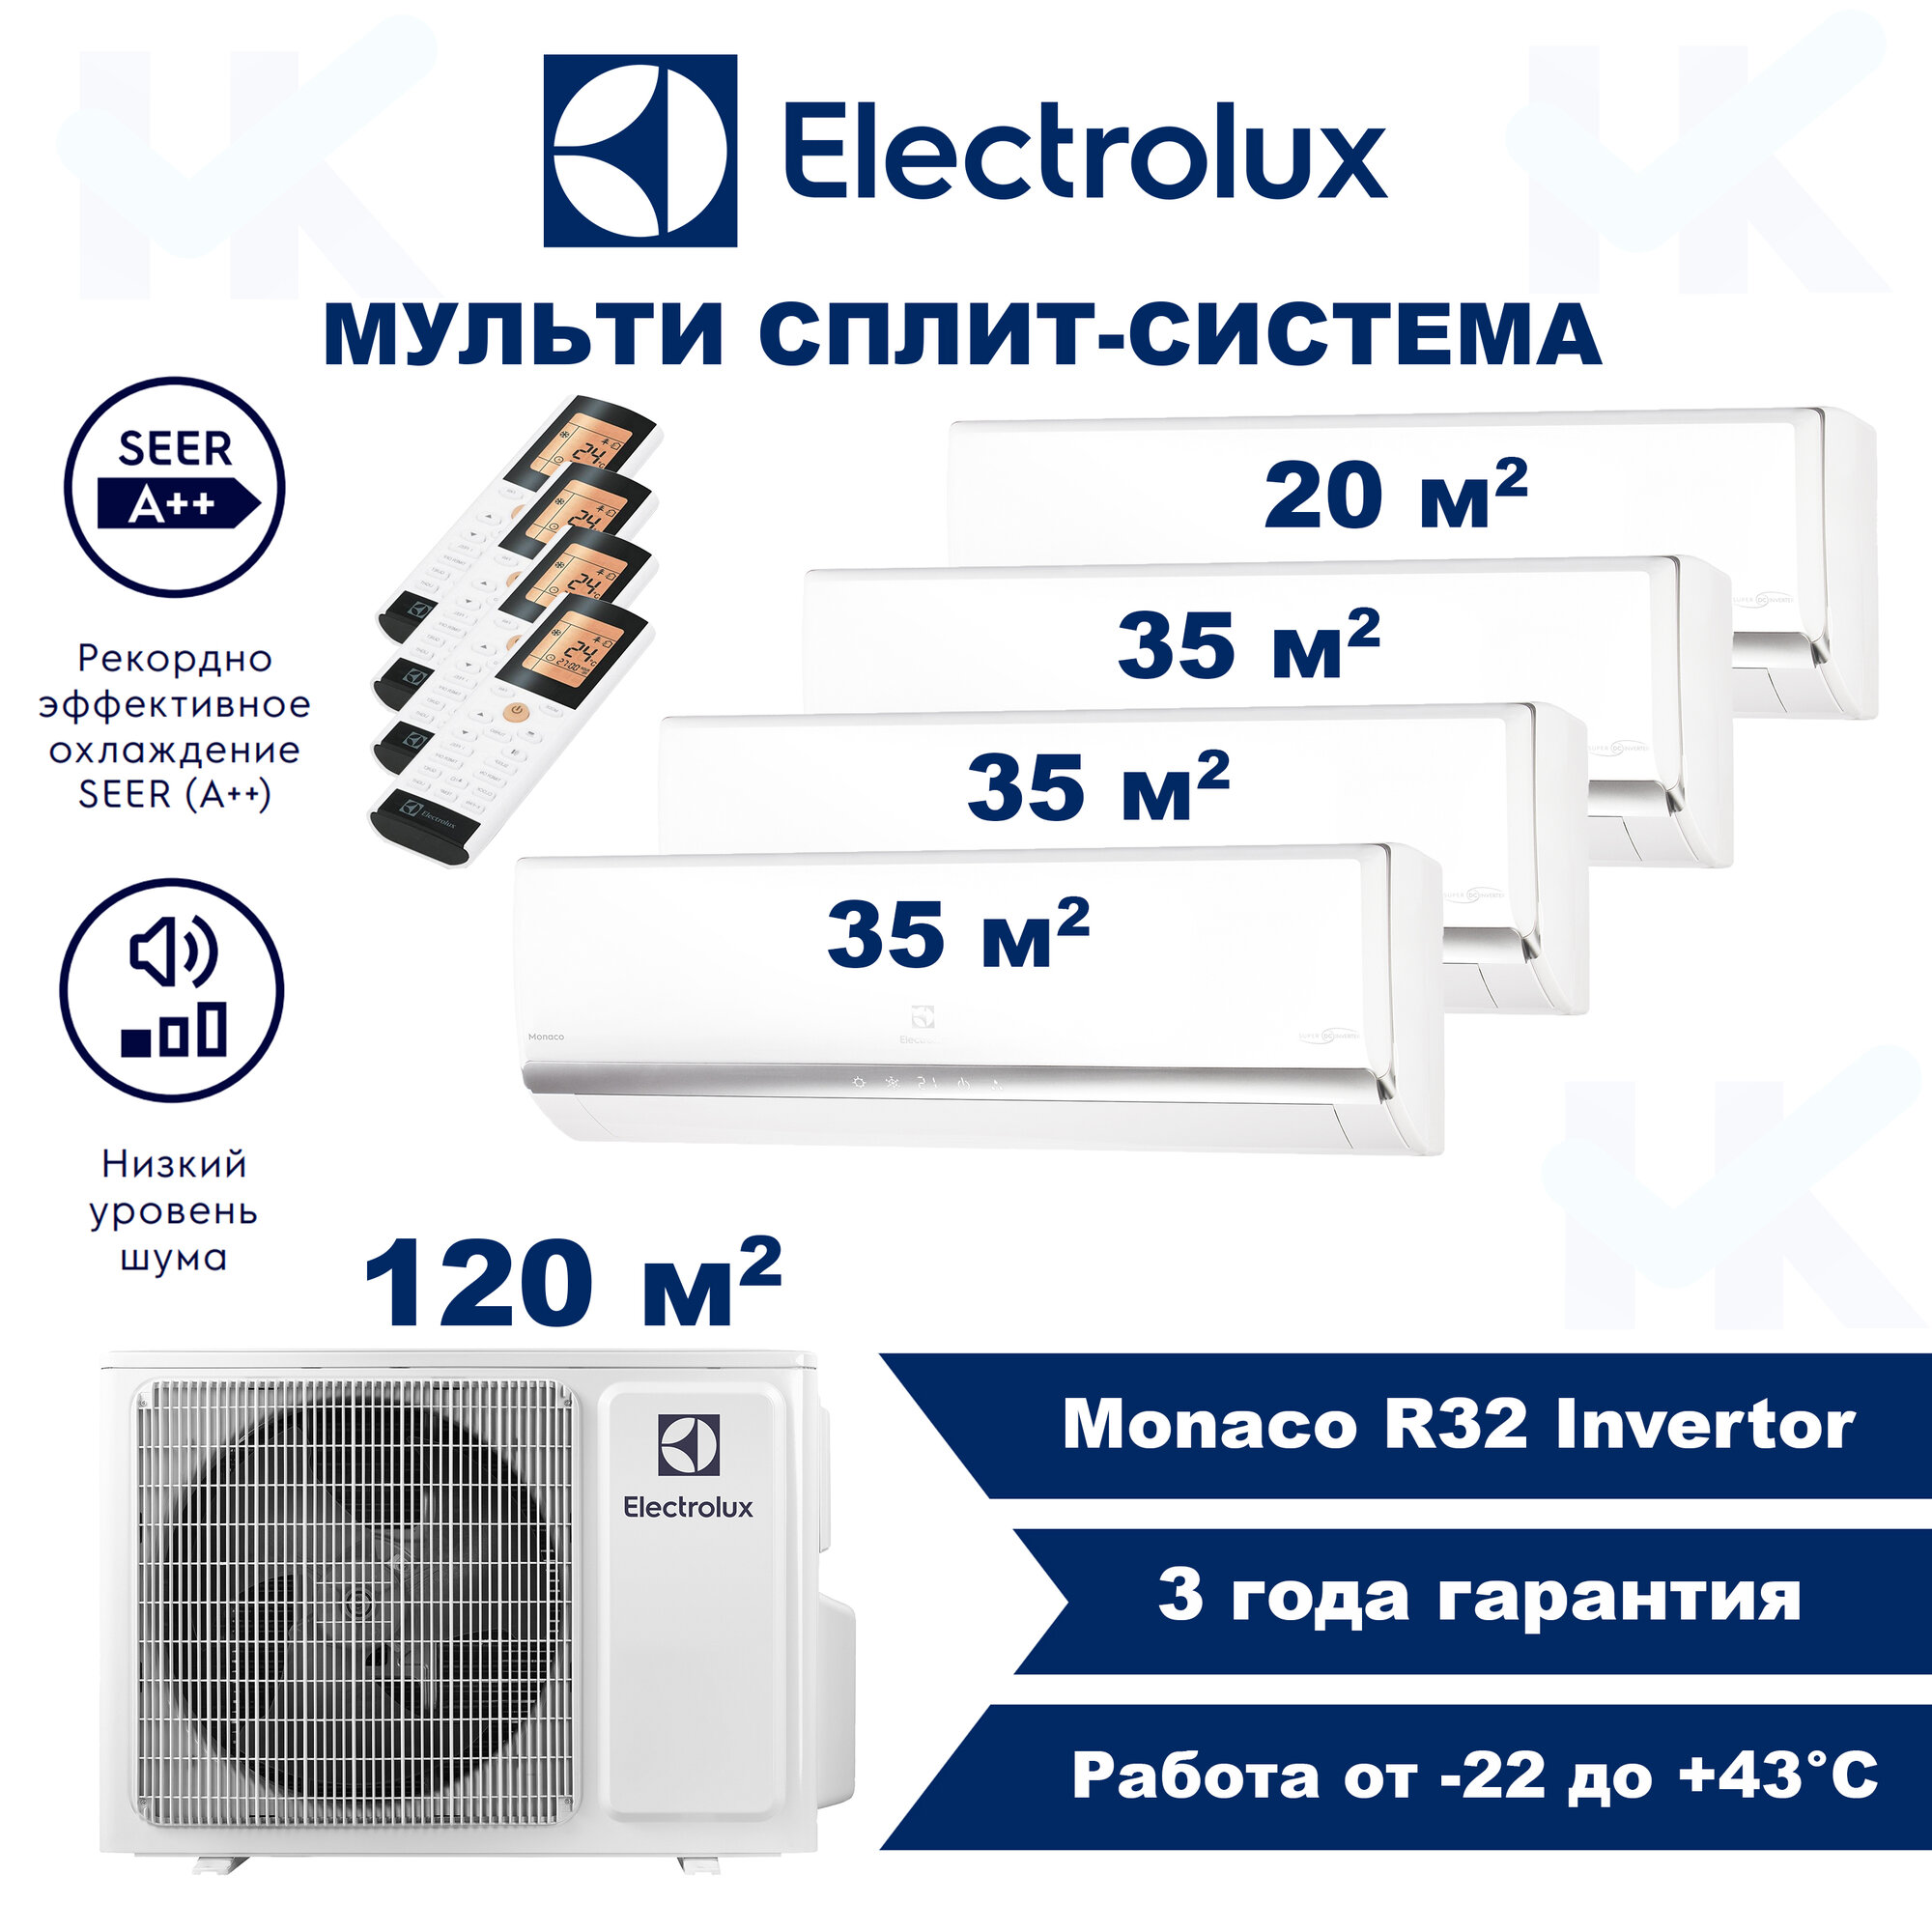 Инверторная мульти сплит-система ELECTROLUX серии Monaco на 4 комнаты (20 м2 + 35 м2 + 35 м2 + 35 м2) с наружным блоком 120 м2, Попеременная работа